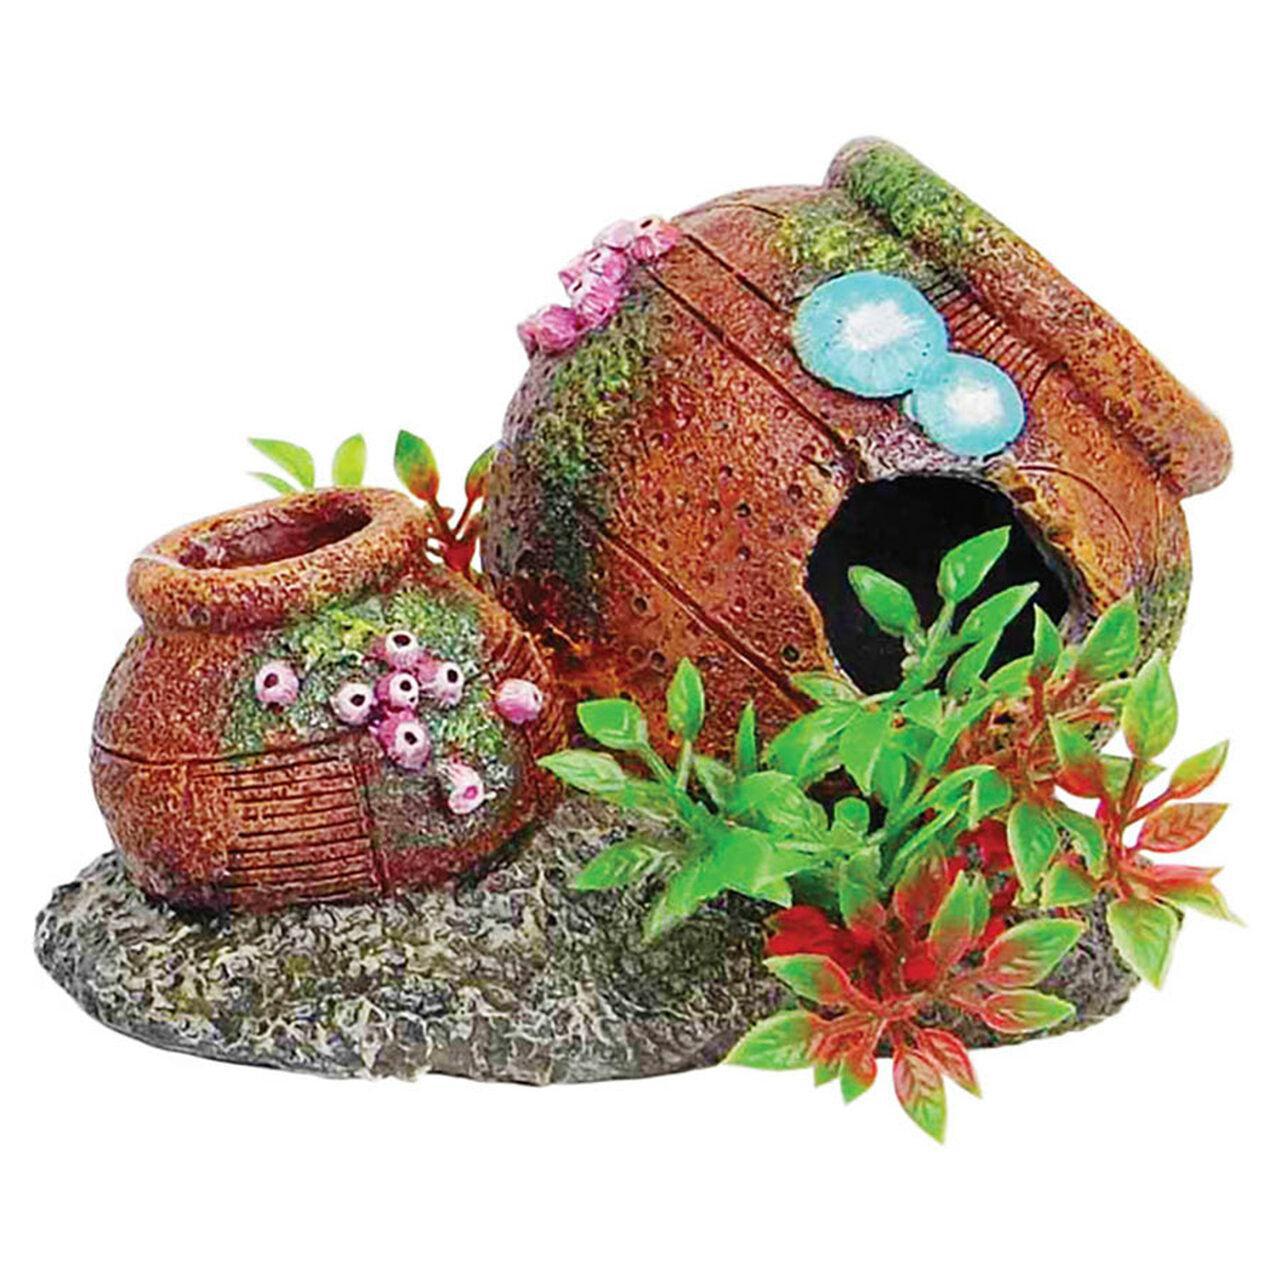 AquaSpectra Rustic Pots with Plants